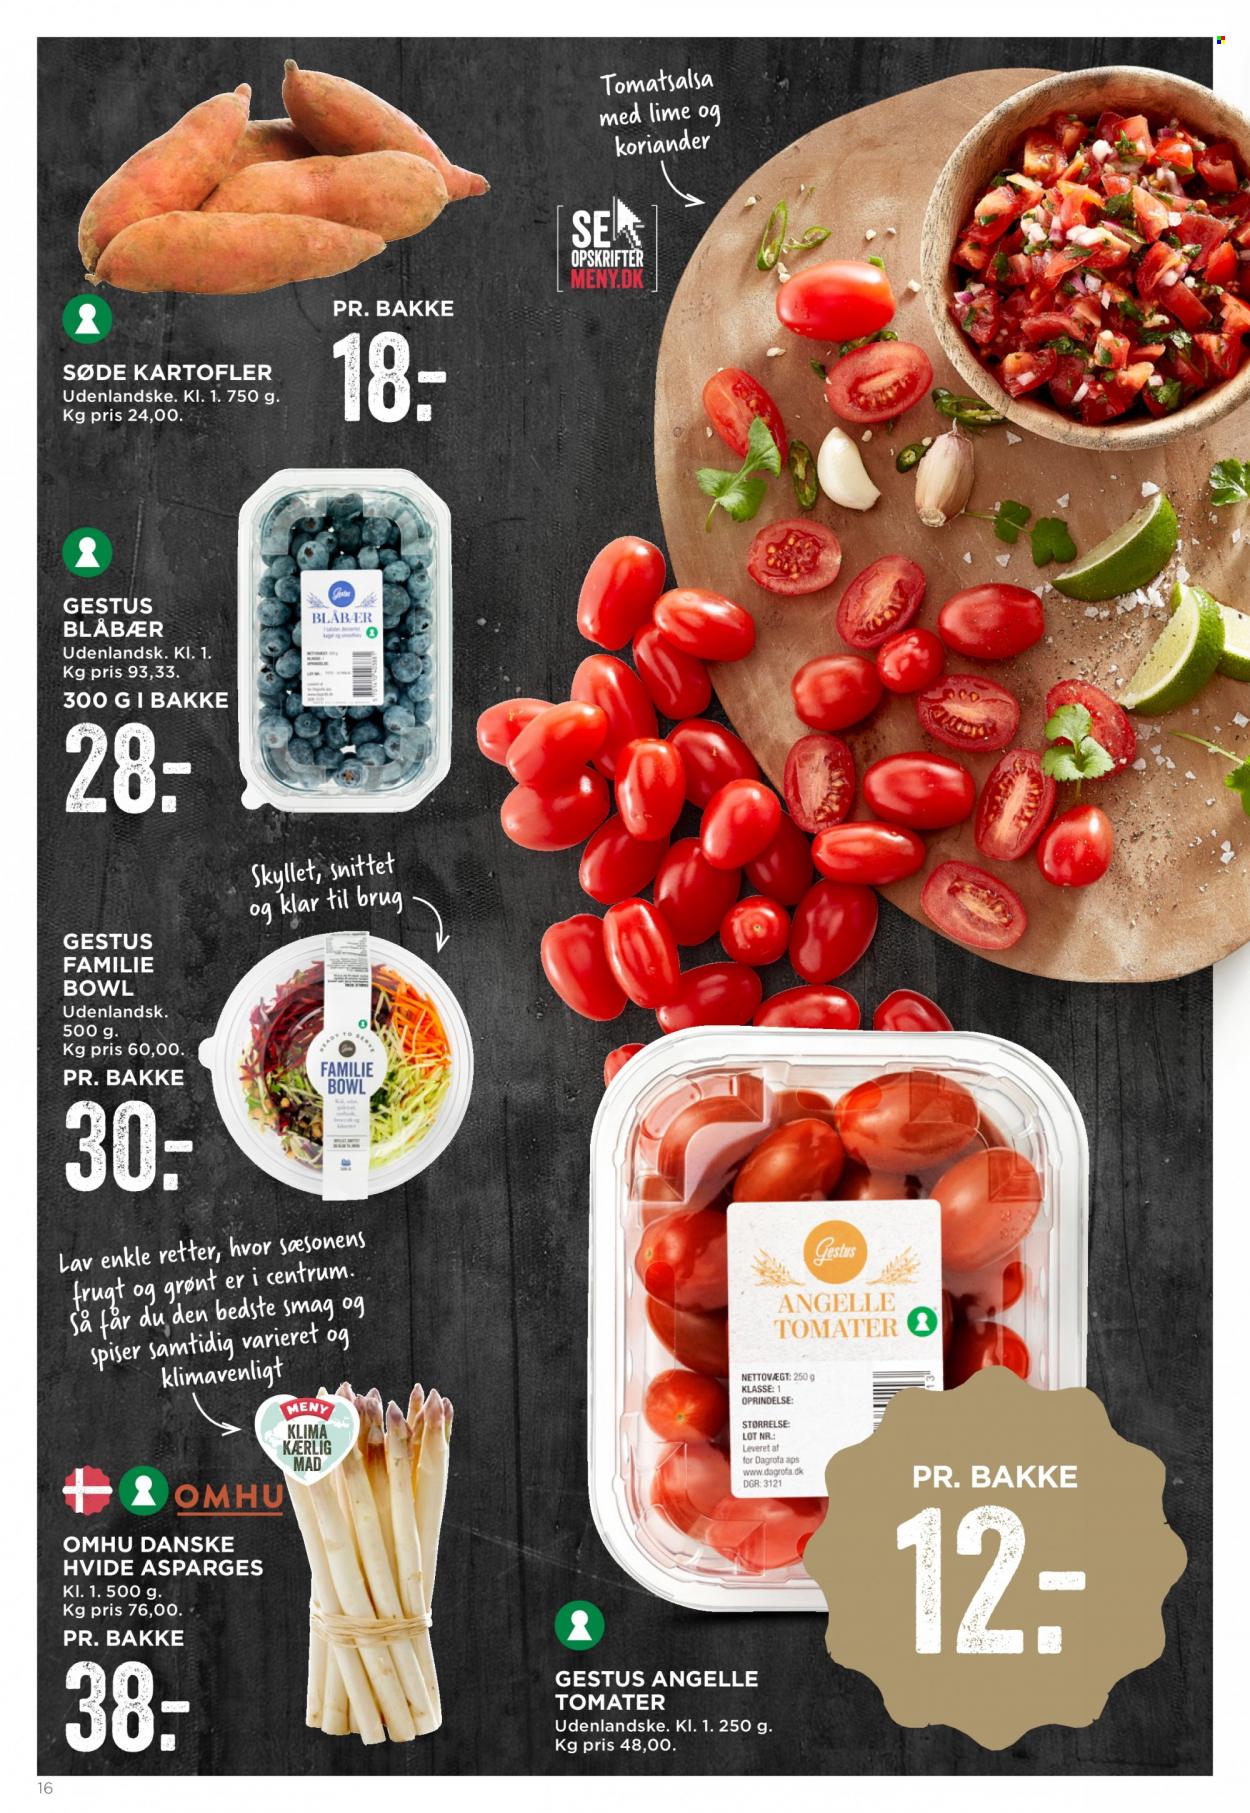 thumbnail - MENY tilbud  - 20.5.2022 - 25.5.2022 - tilbudsprodukter - blåbær, asparges, hvide asparges, kartofler, tomat. Side 16.